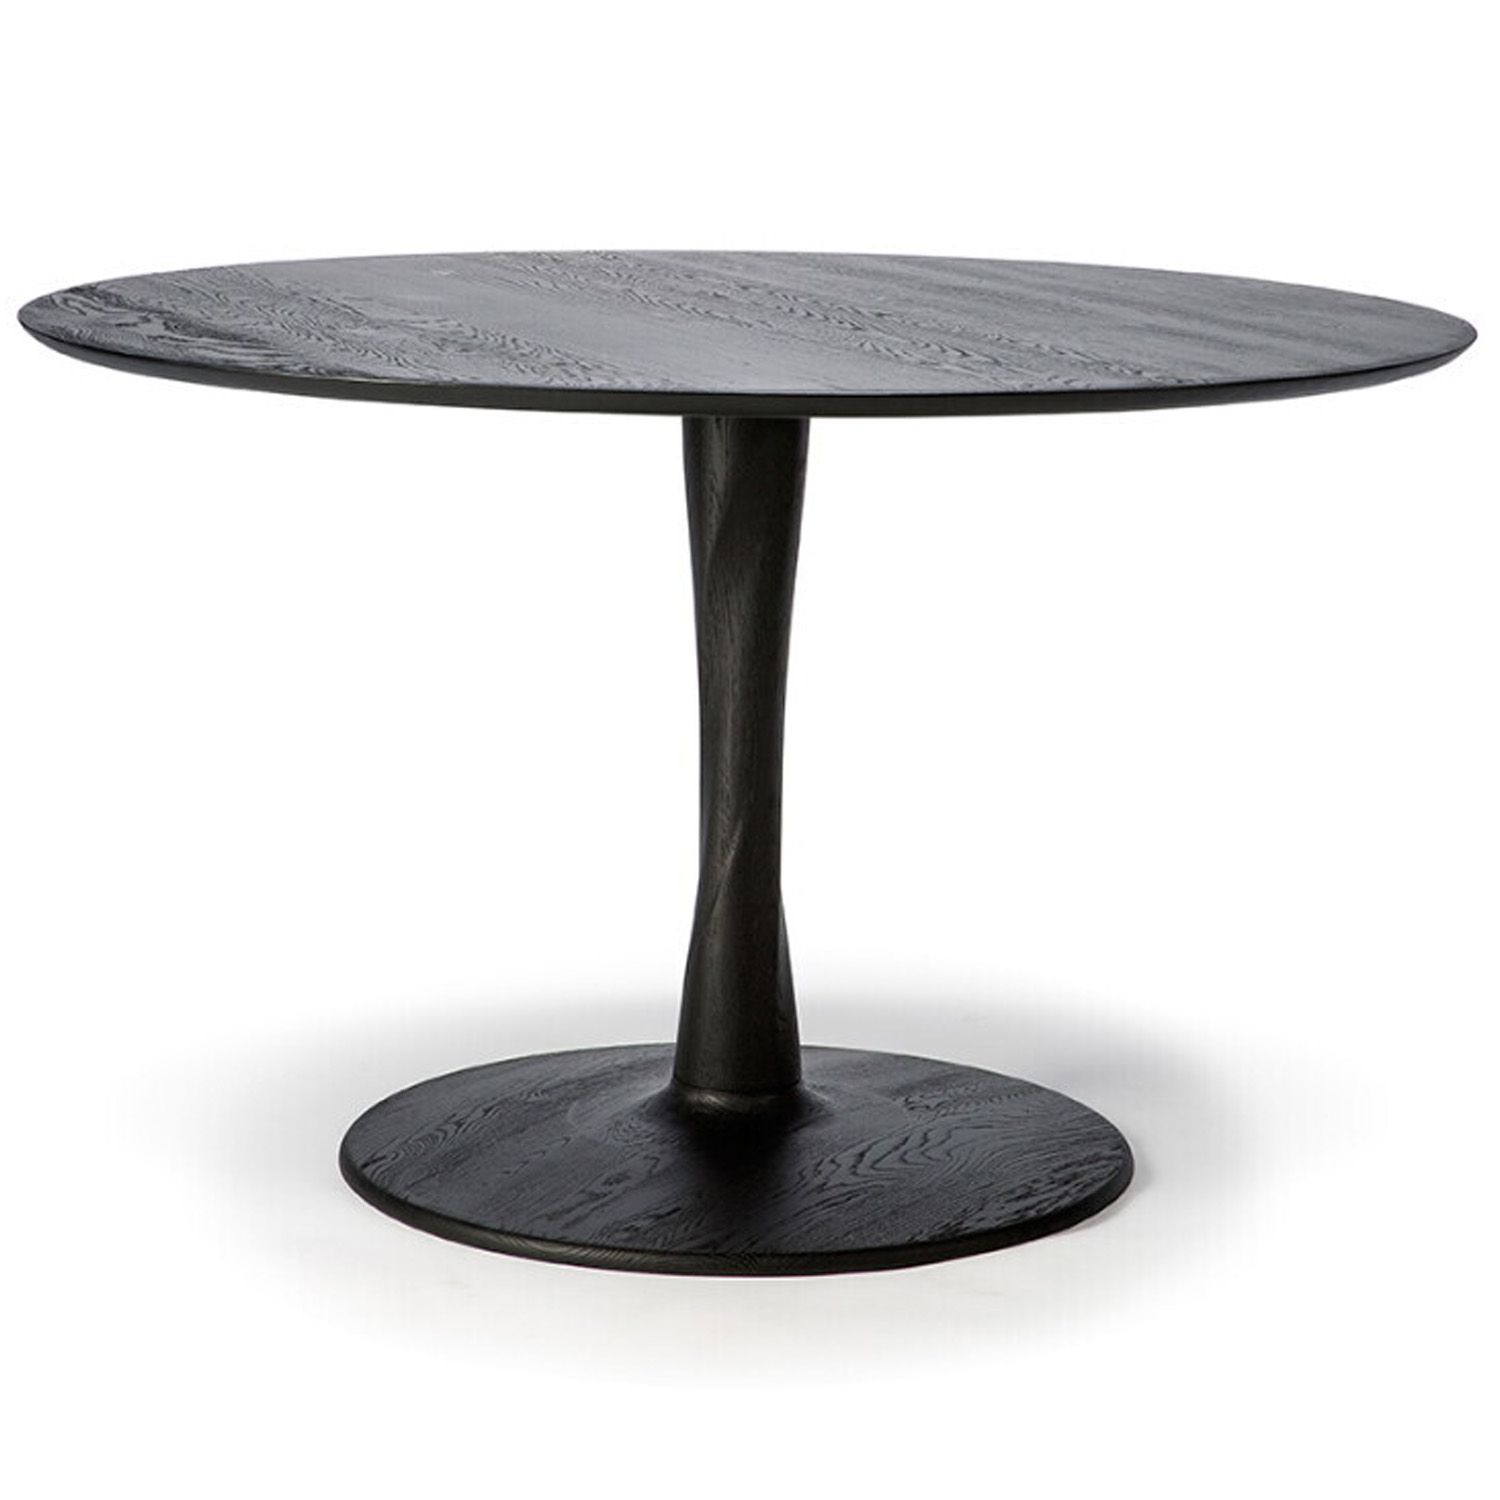 Výprodej Ethnicraft designové jídelní stoly Torsion Dinning Table (černá, Ø 127 cm) - DESIGNPROPAGANDA